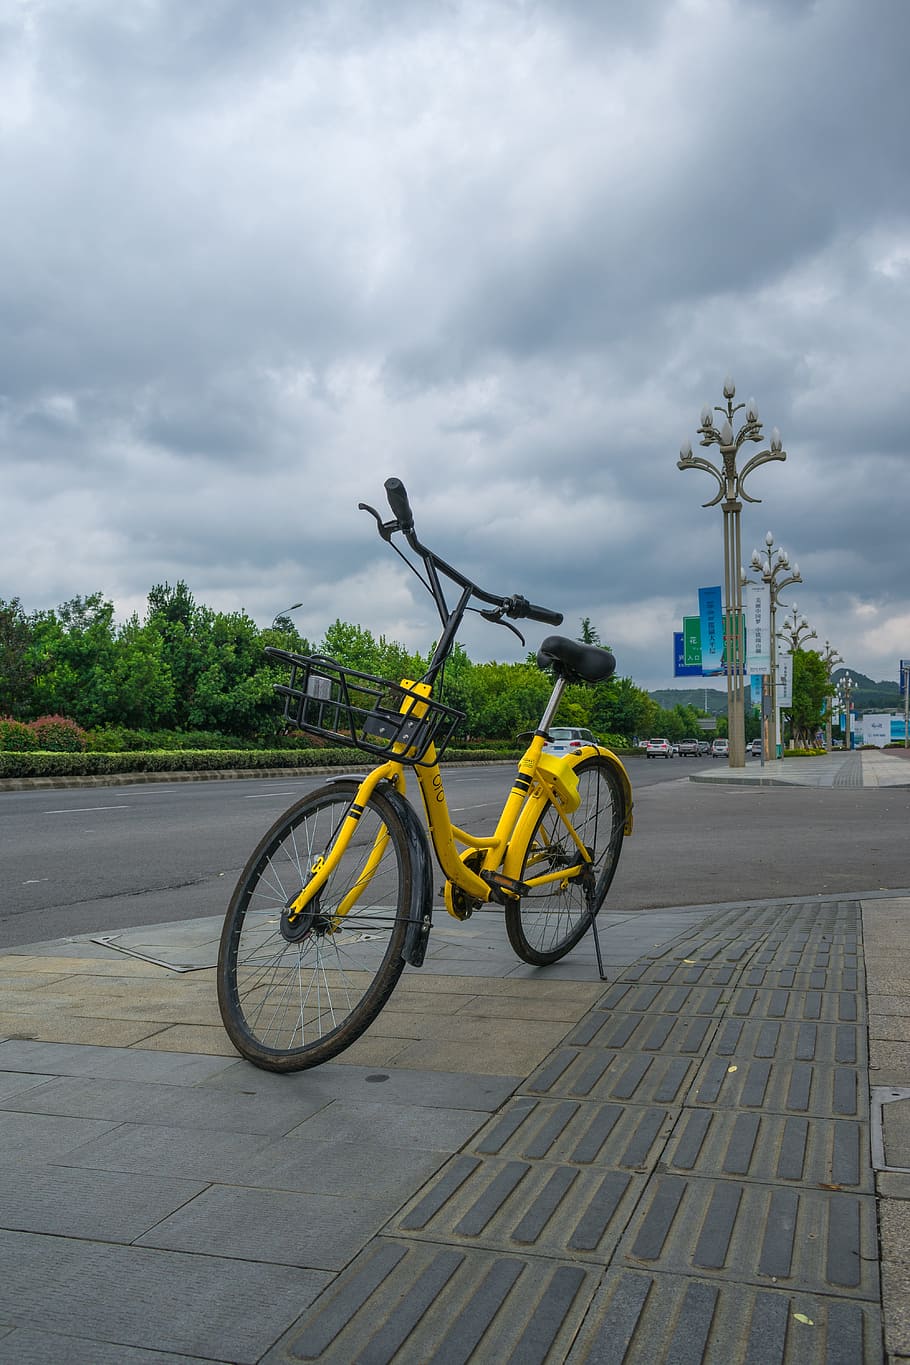 ofo, mobil kuning kecil, sepeda bersama, sepeda, sepeda ofo bersama, ekonomi berbagi, jalan, awan - langit, transportasi, moda transportasi